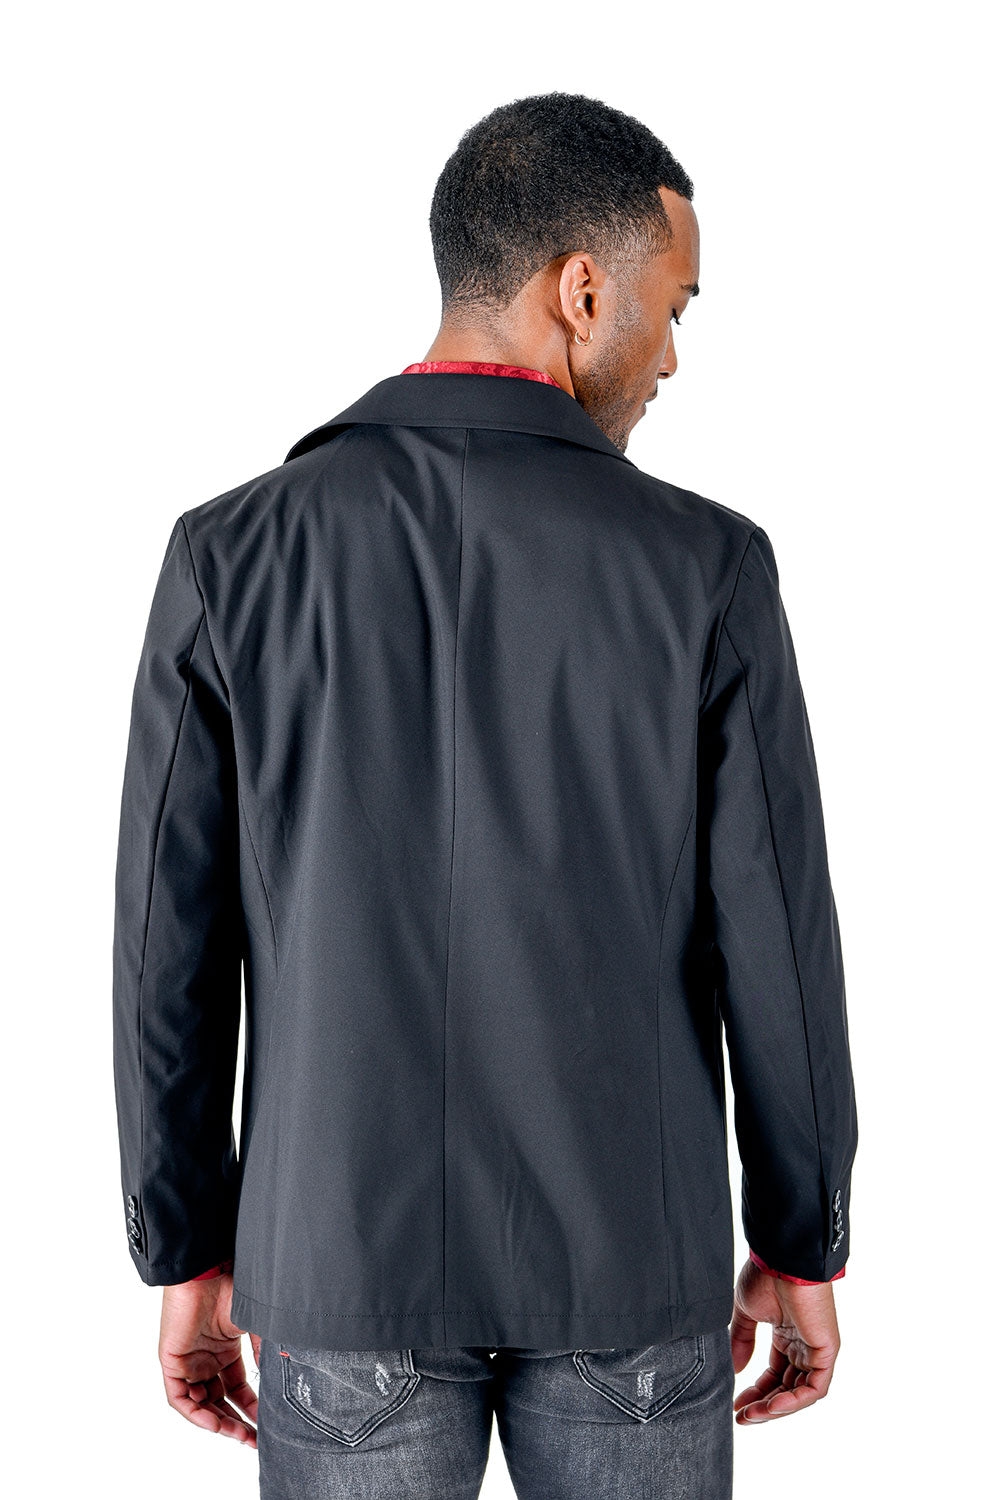 BARABAS Men's Solid Color Light Weight Jacket BH72 Black